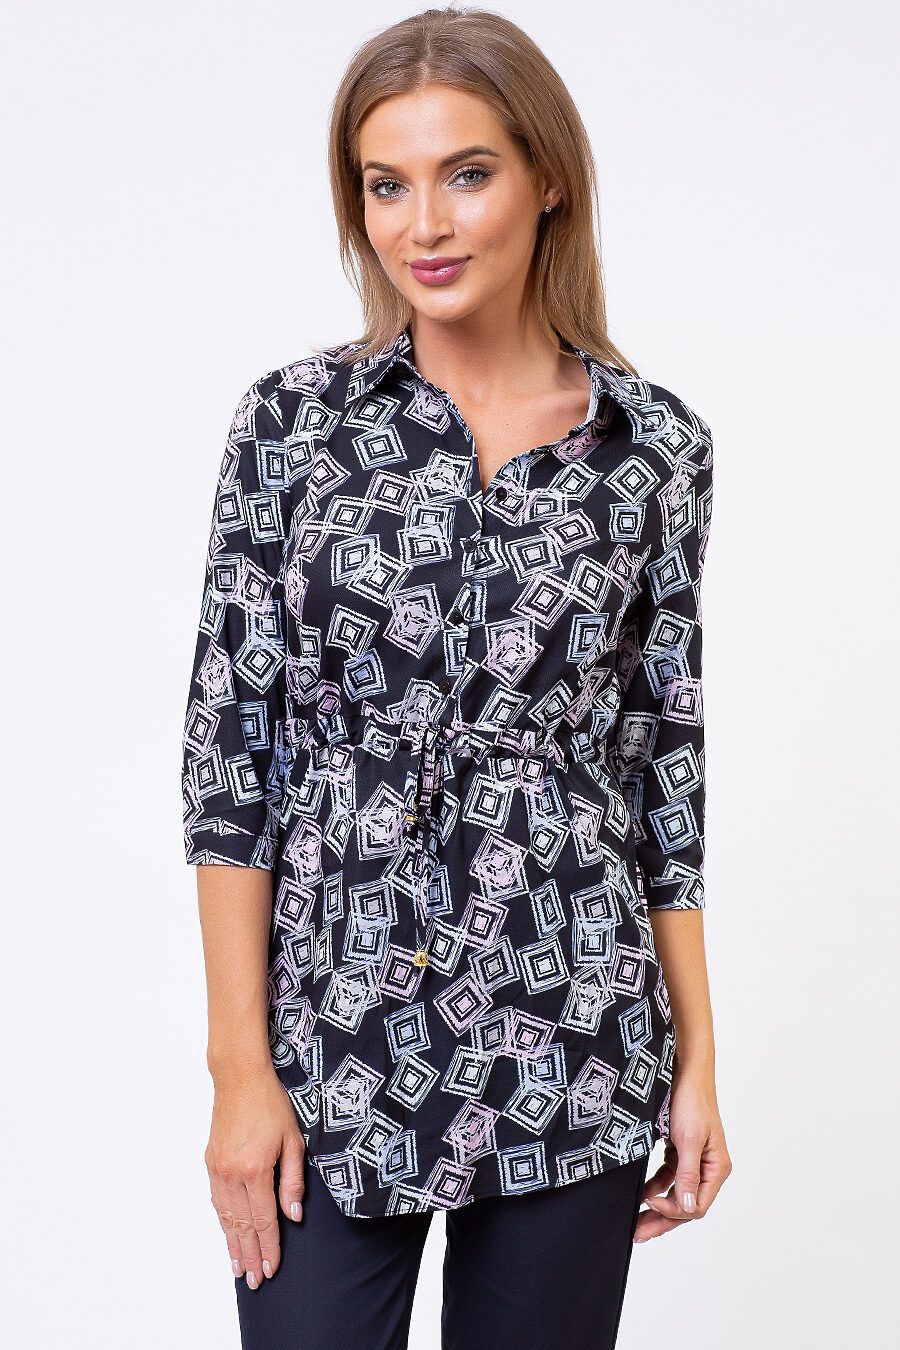 Блуза TUTACHI (125201), купить в Moyo.moda